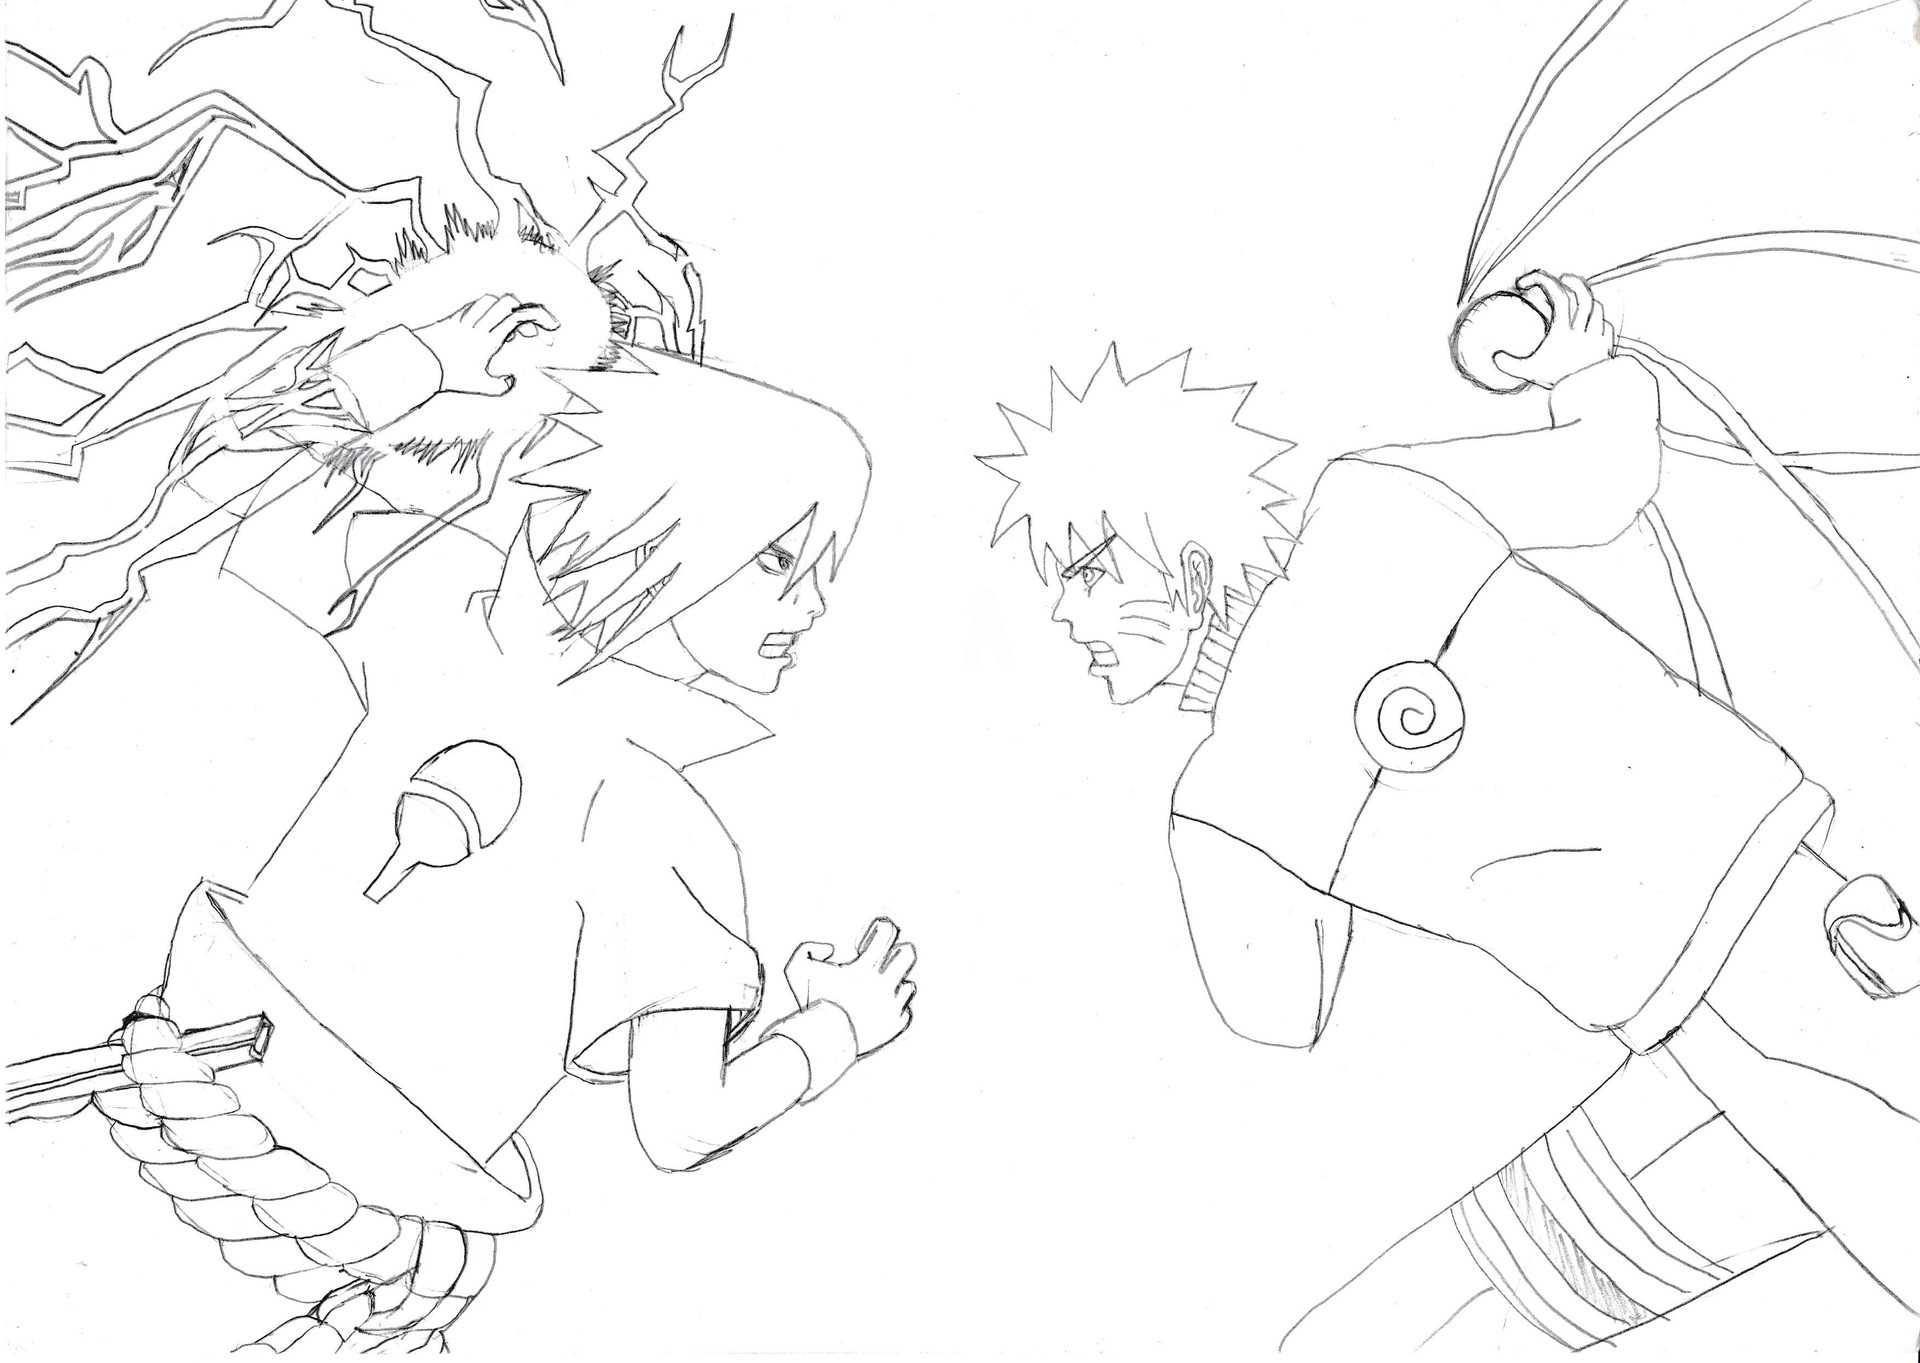 Naruto Rasengan drawing : r/Naruto